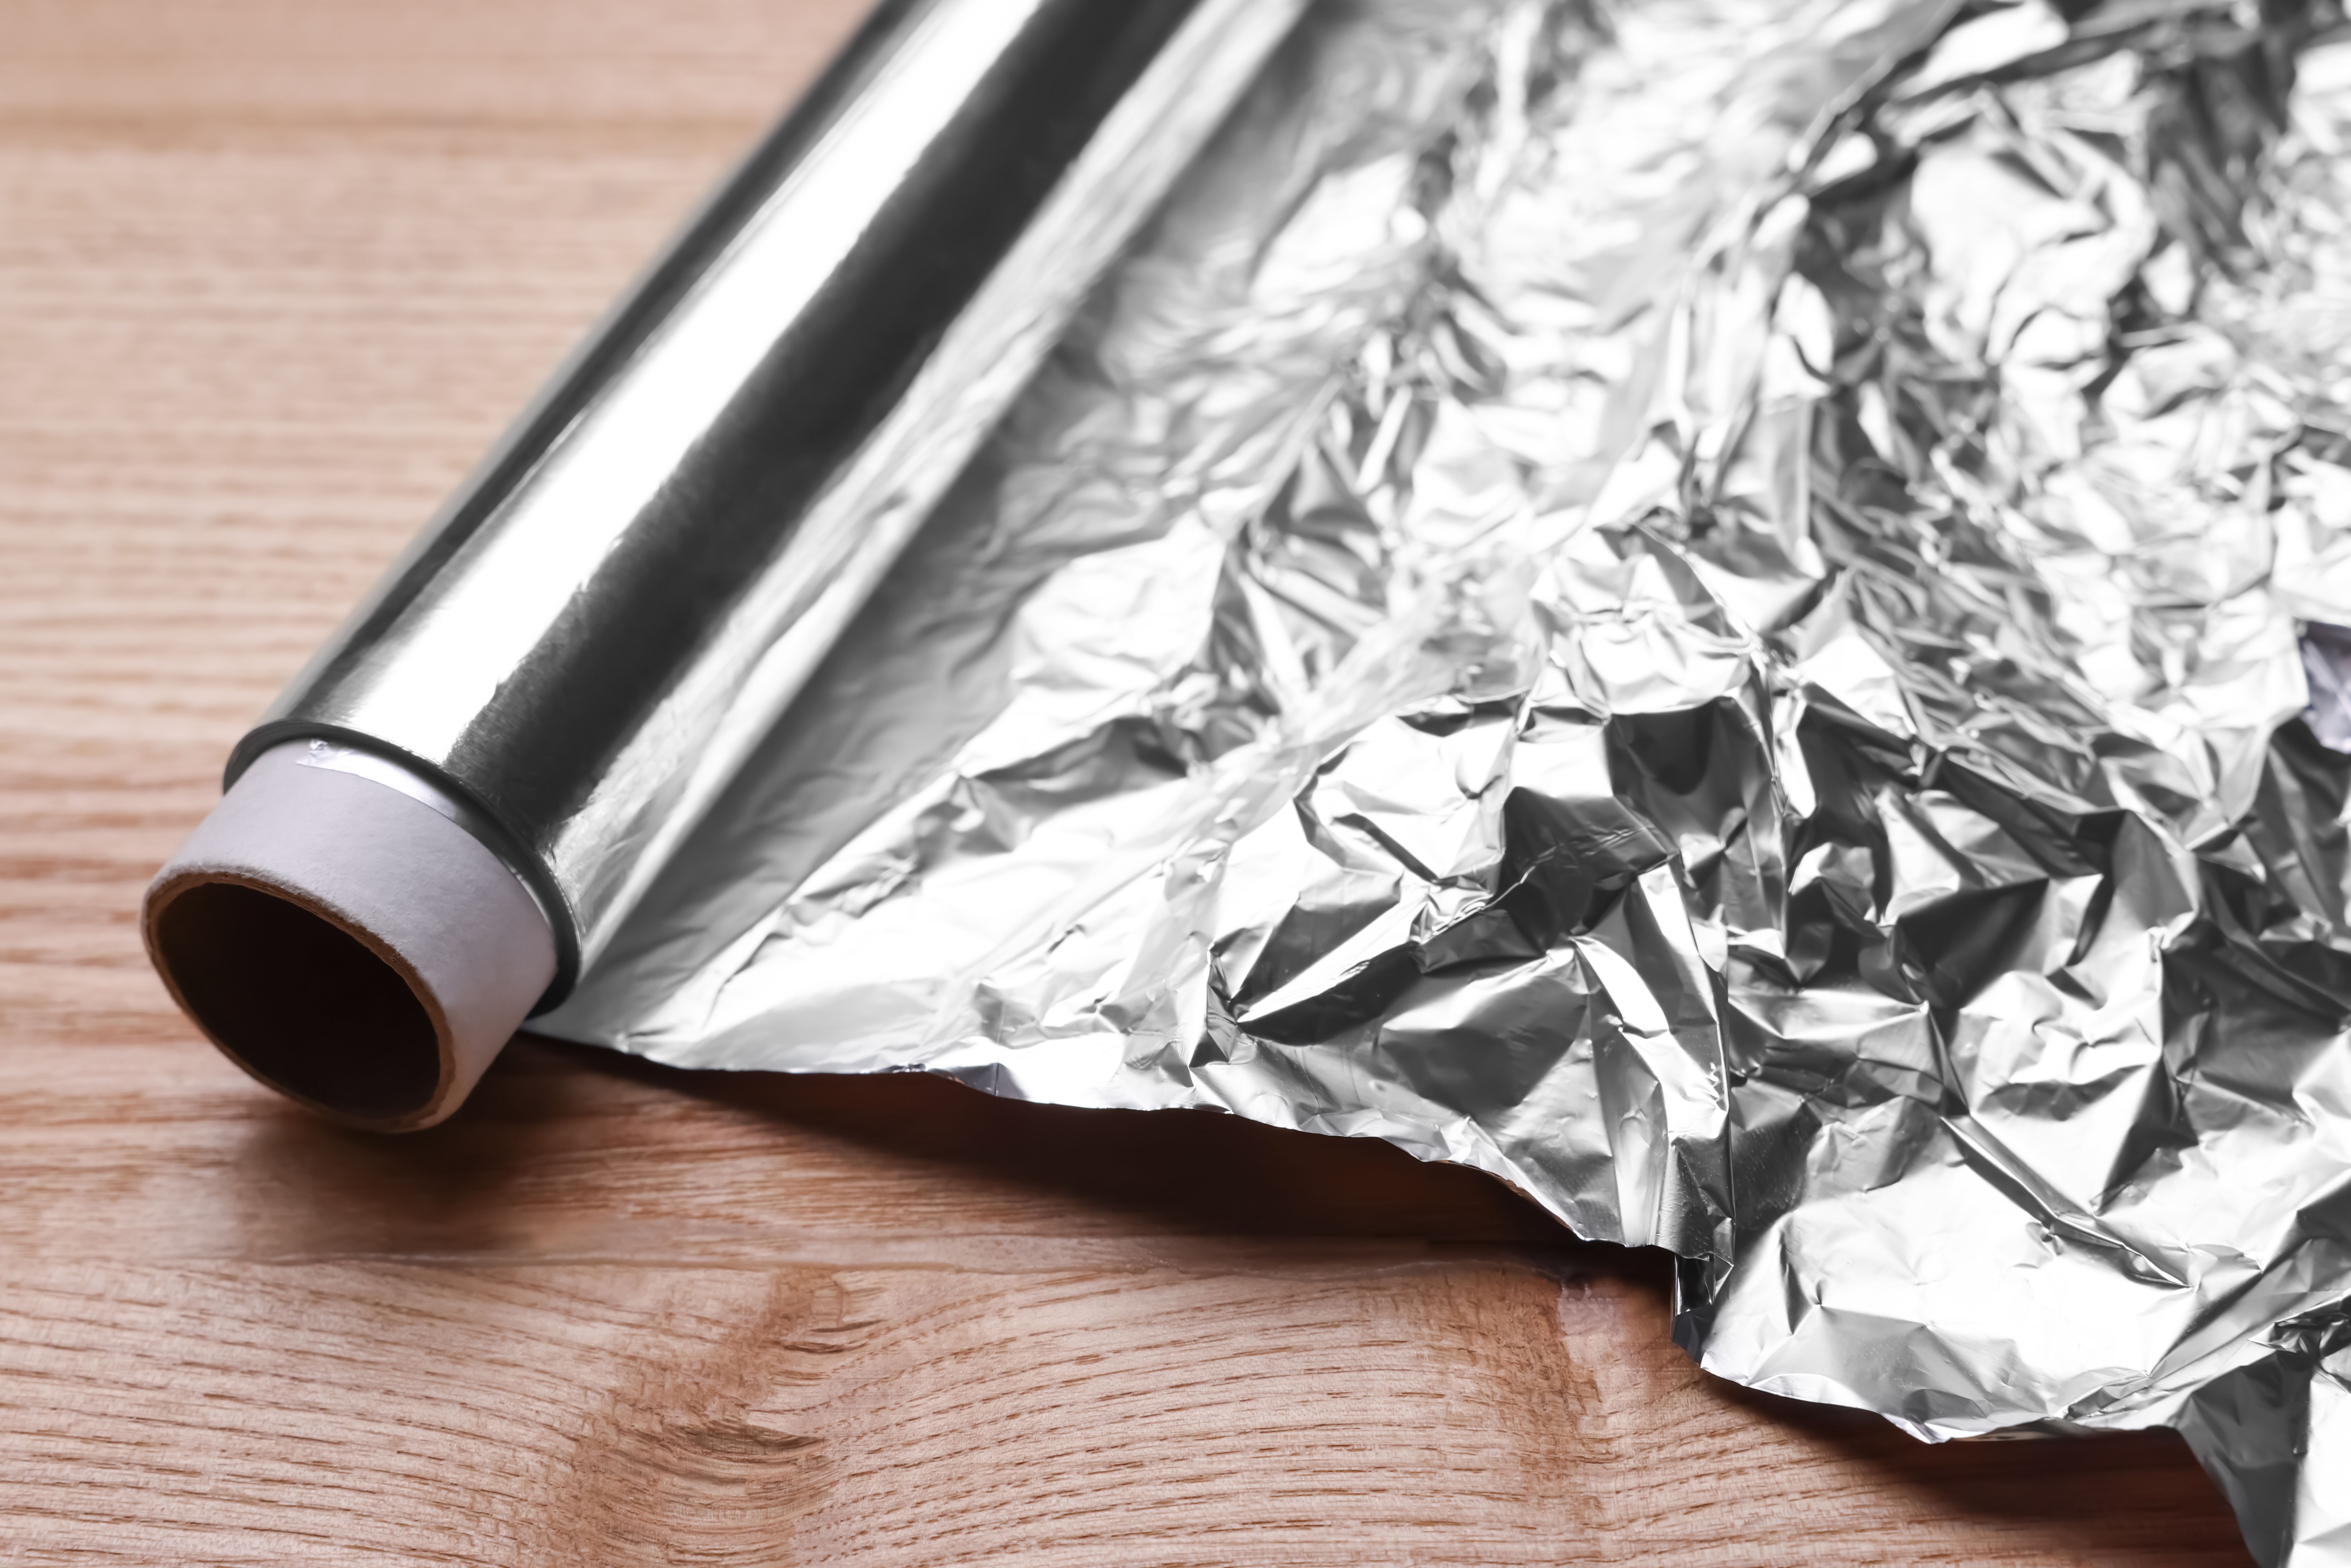 Papel de aluminio: una buena solución para el calor